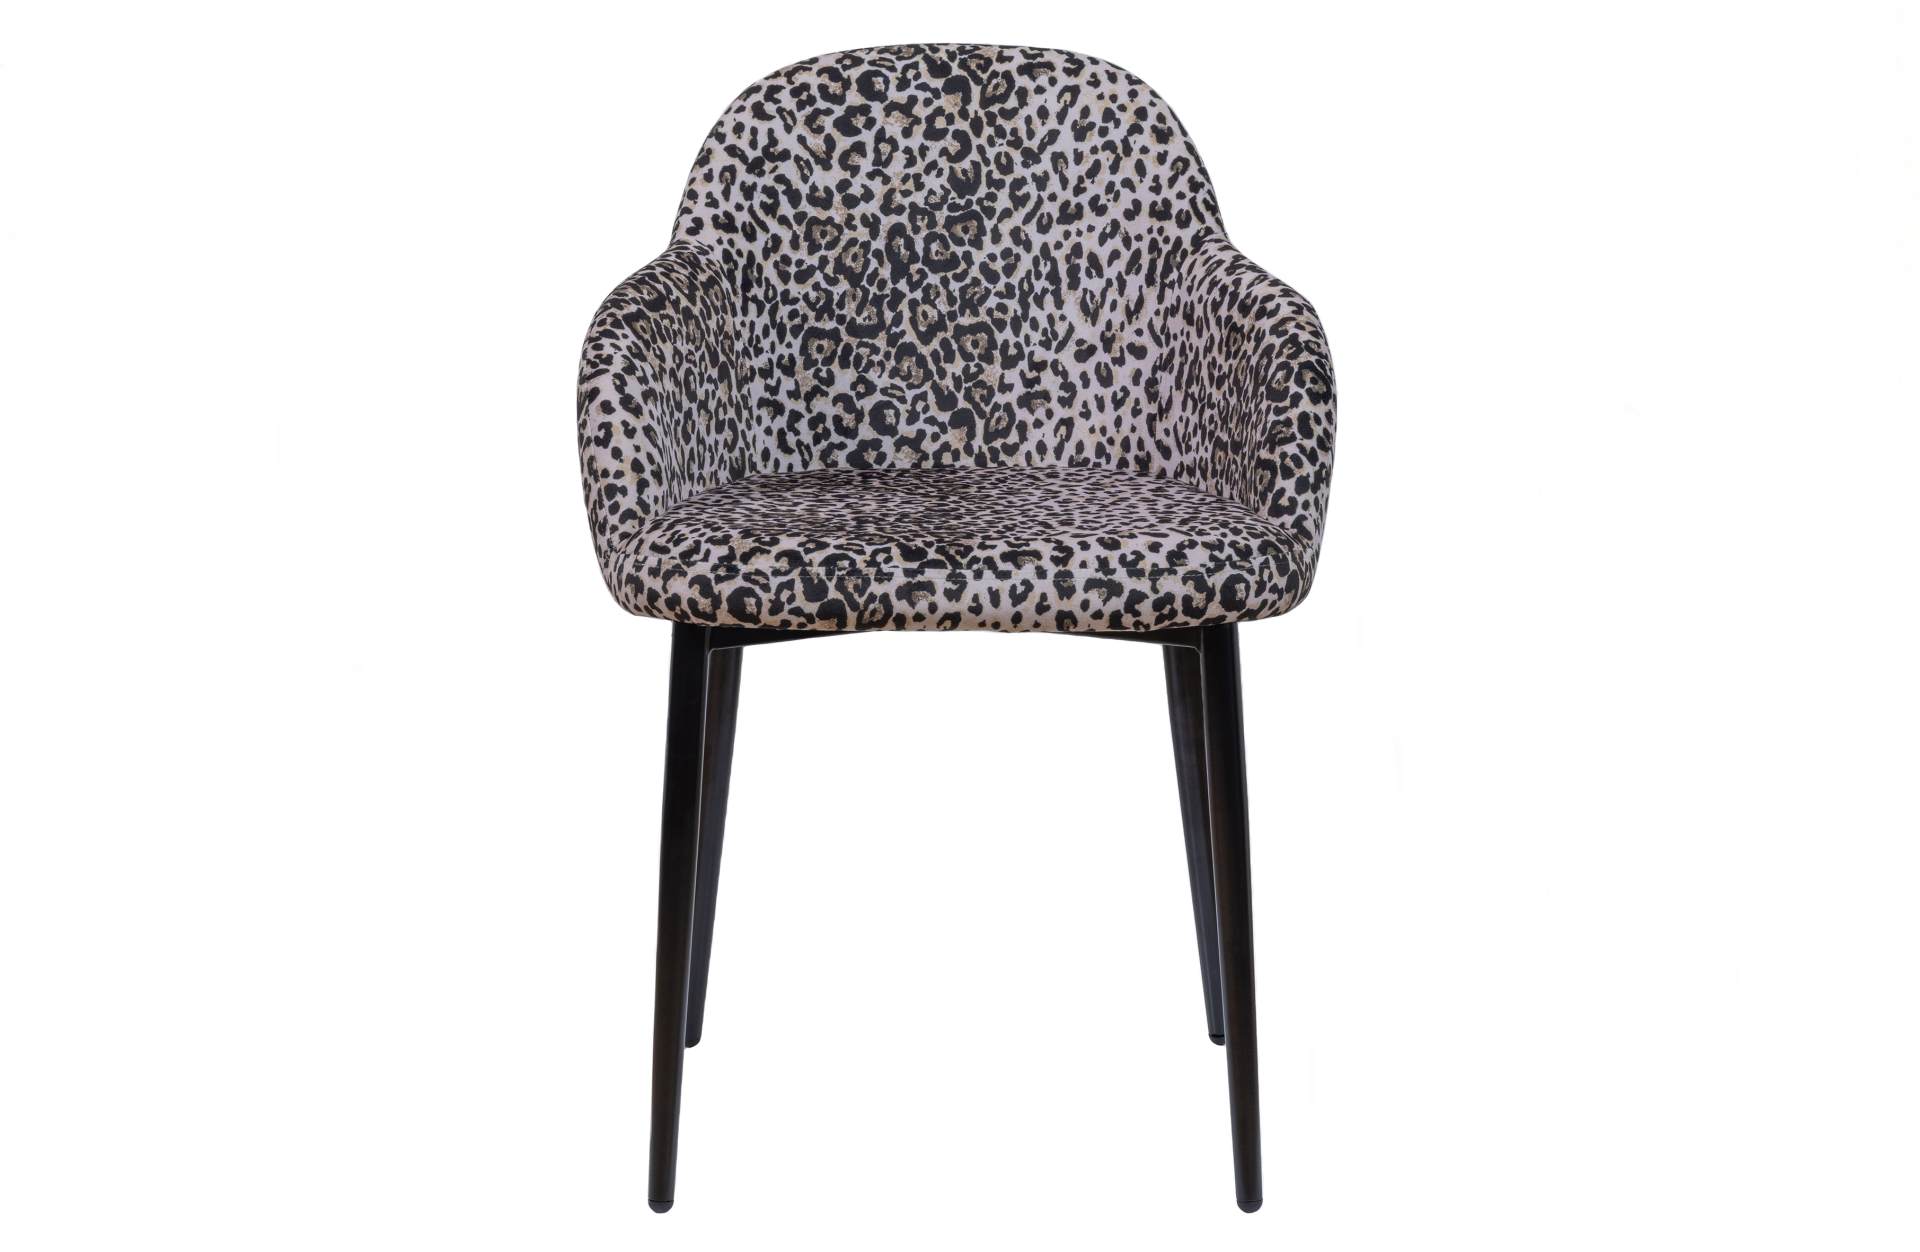 Der Esszimmerstuhl Noortje überzeugt mit seinem klassischen Design. Gefertigt wurde er aus Kunststofffasern, welche einen einen Panther Look besitzen. Das Gestell ist aus Metall und hat eine schwarze Farbe. Die Sitzhöhe beträgt 45 cm.